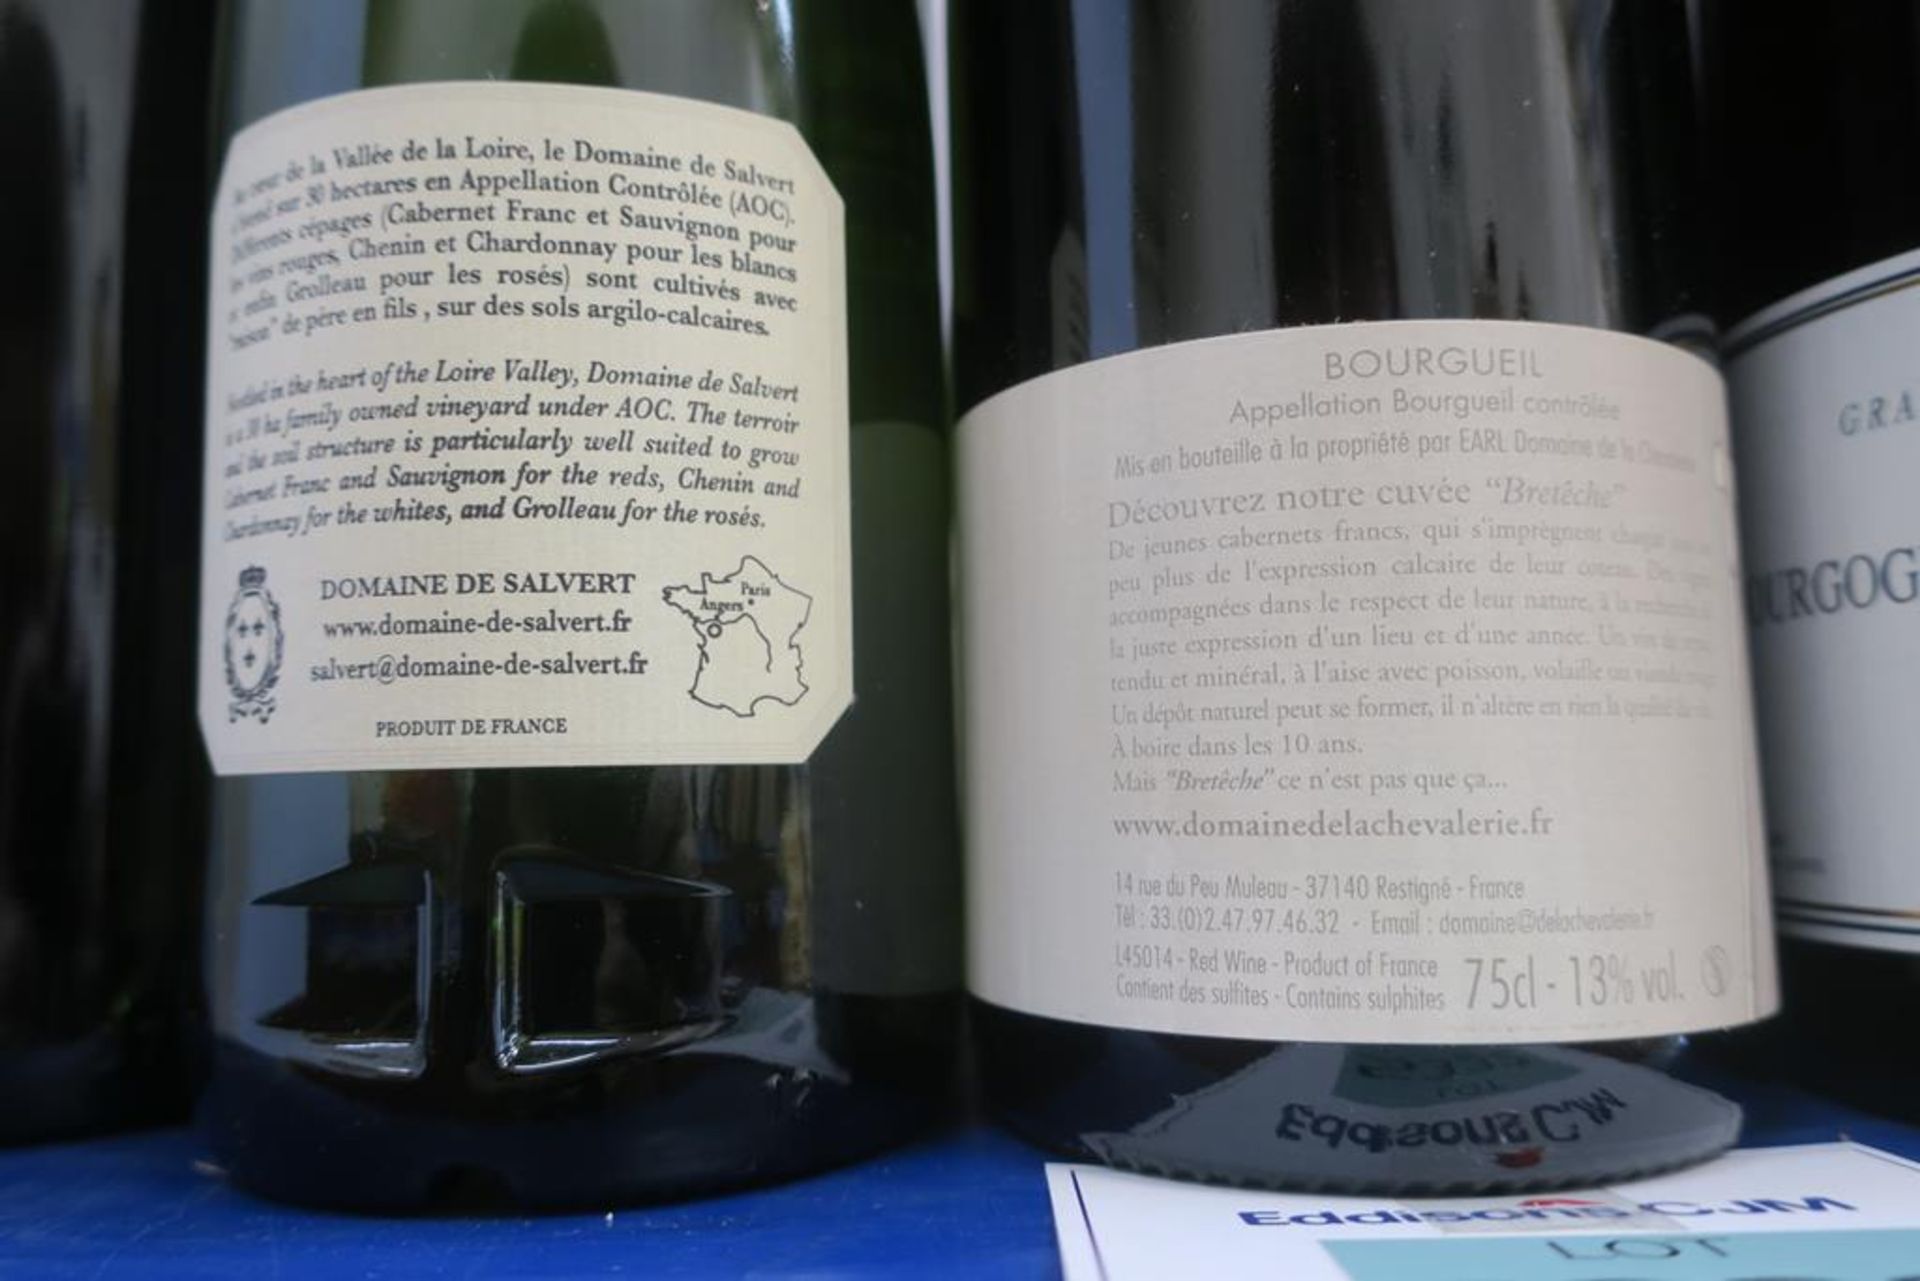 Chateau Clos, Domaine De La Chevalerie, Domaine Lucien Red Wine and Domaine De Salvert White Wine - Image 3 of 3